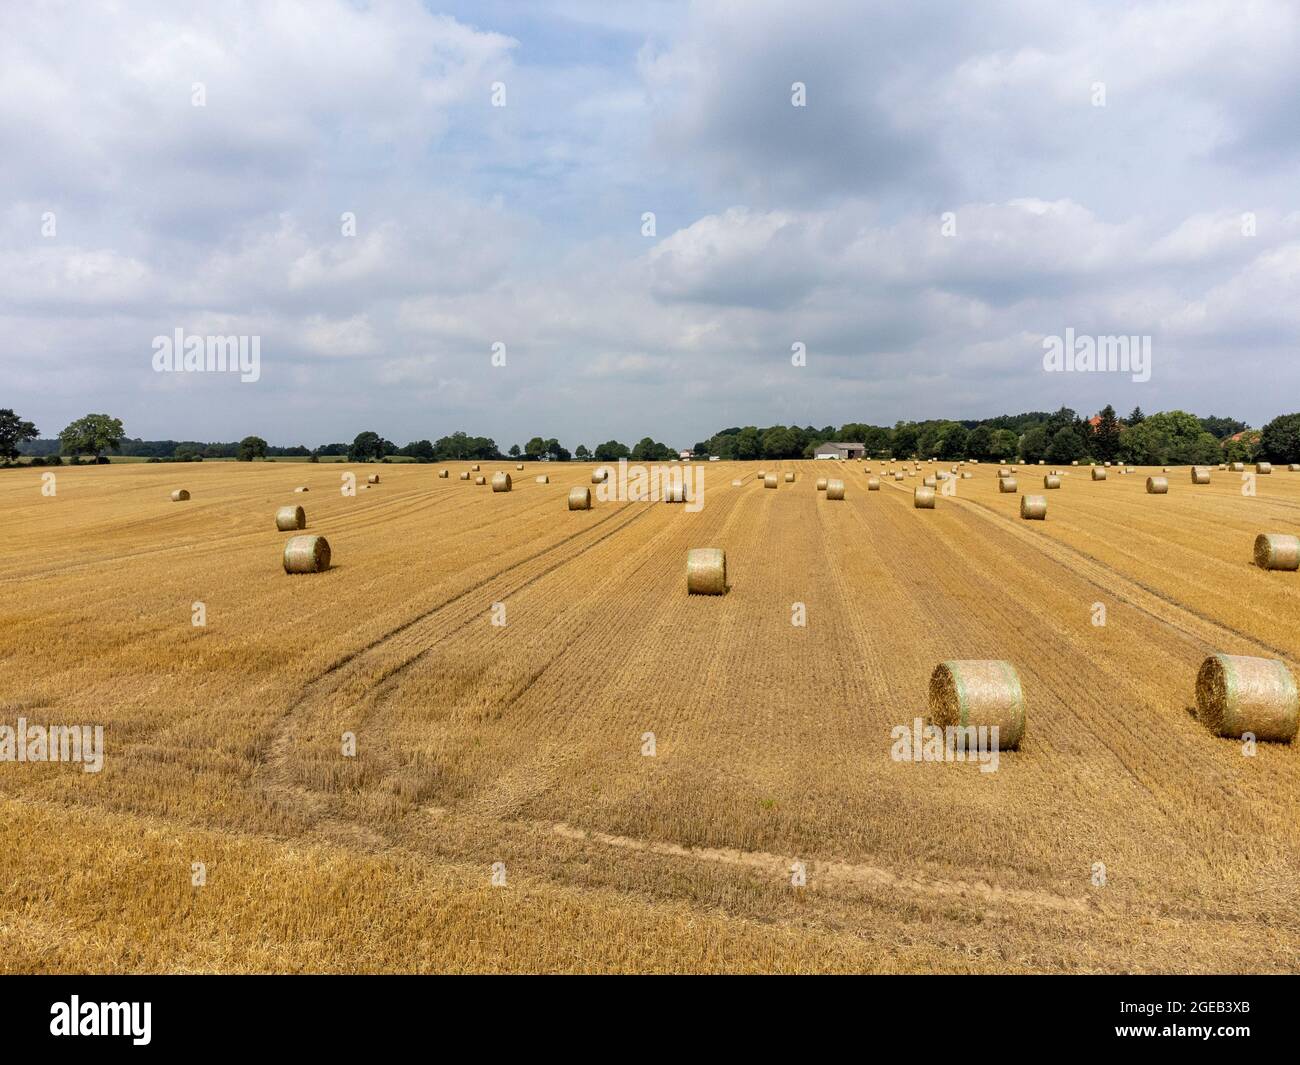 Strahballen auf einem abgeernteten Getreidefeld Foto de stock